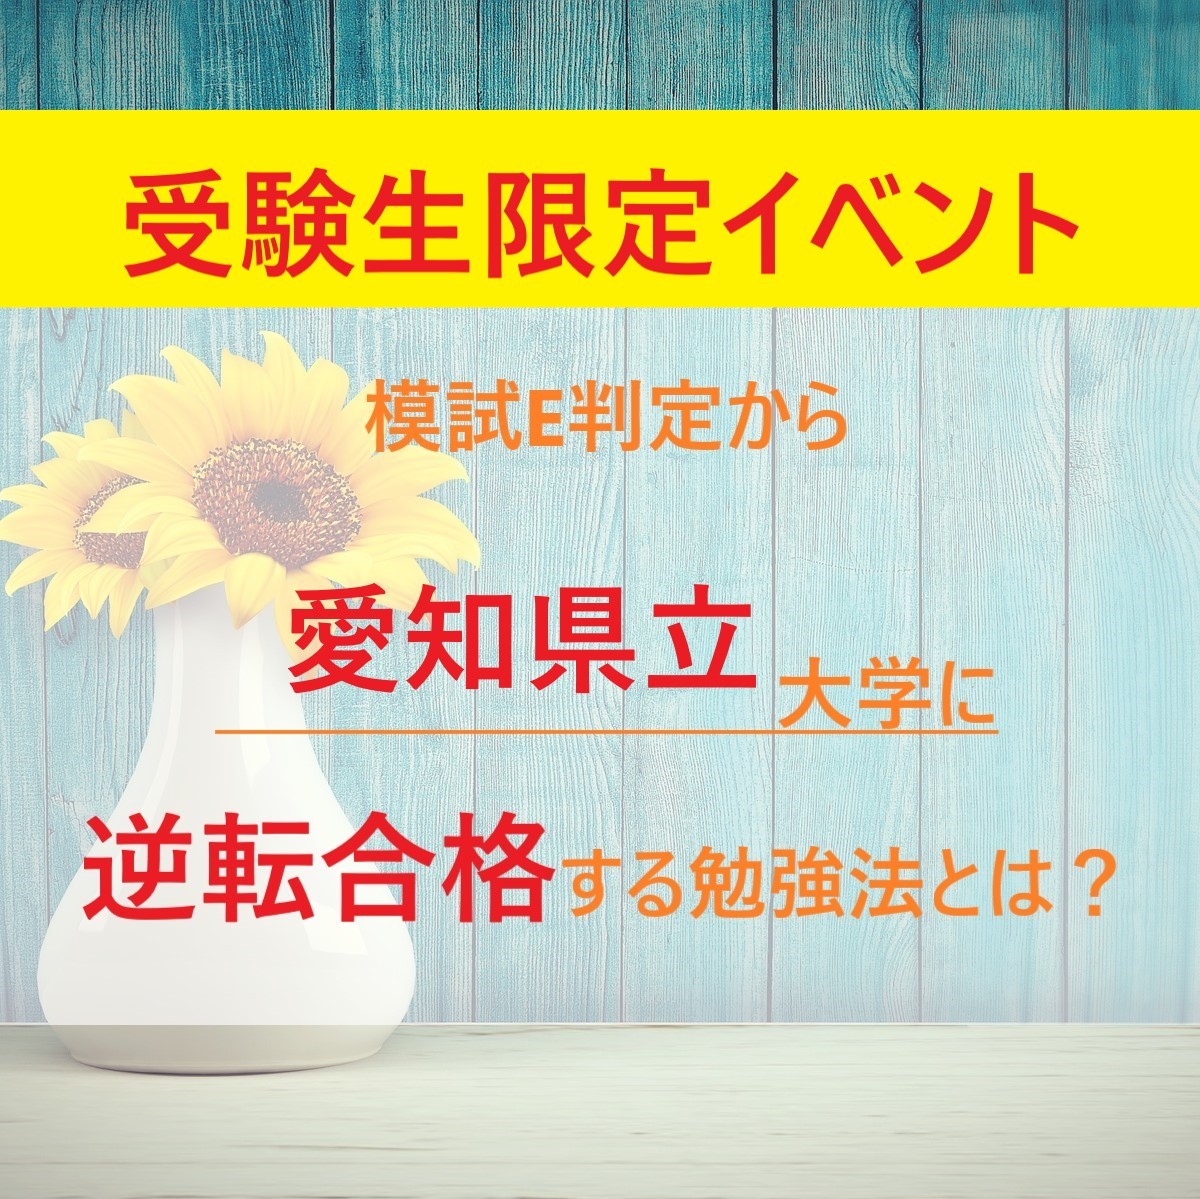 【6月イベント】夏休み前！模試E判定から「愛知県立大学」に逆転合格する勉強法を教えます！